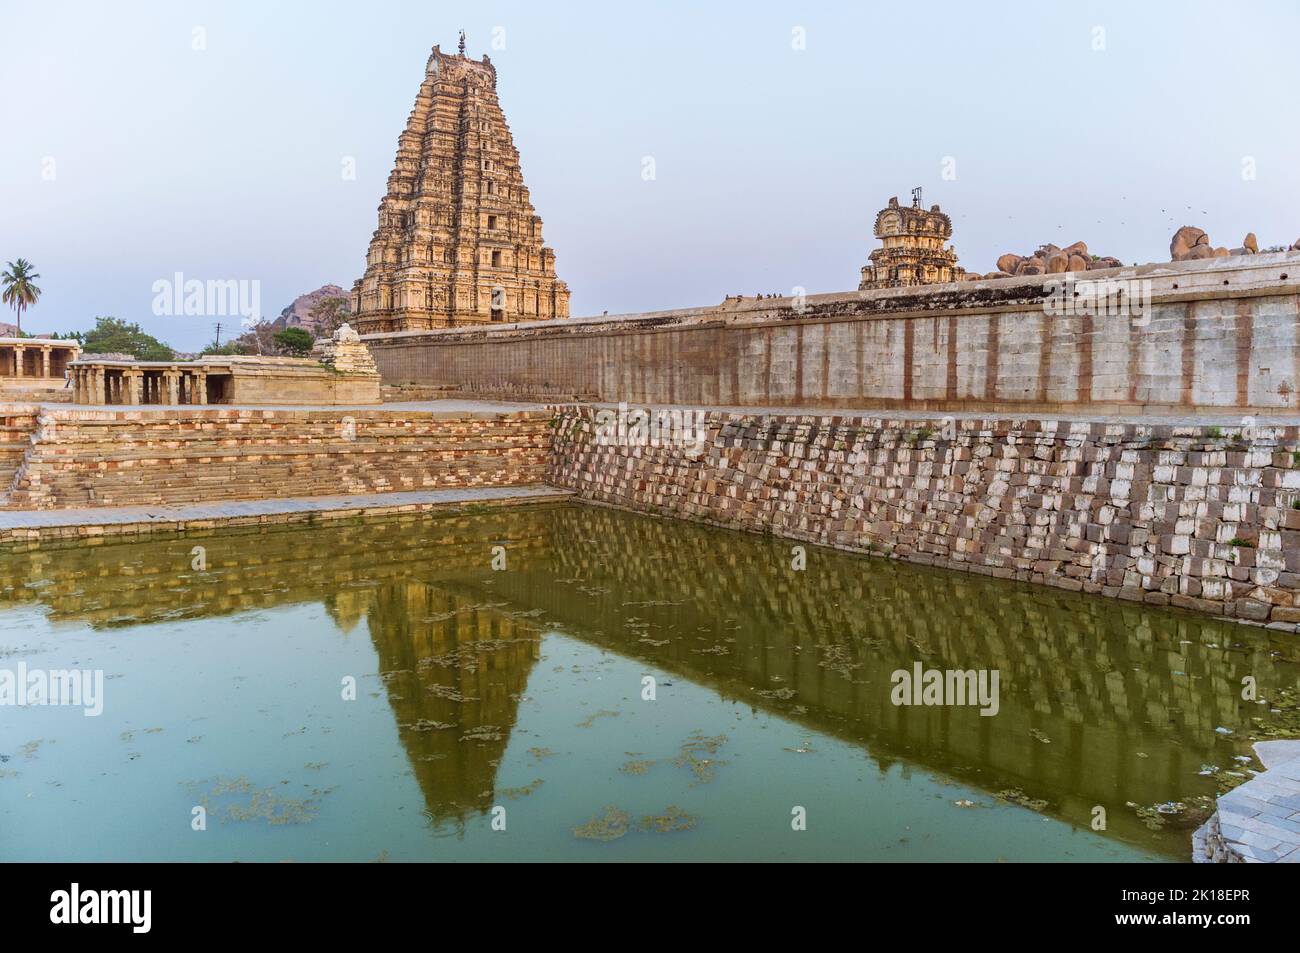 Hampi, Karnataka, India: Torre gopuram del siglo 7th del Templo de Sree Virupaksha reflejado en el tanque de agua. Se cree que es una función ininterrumpida Foto de stock